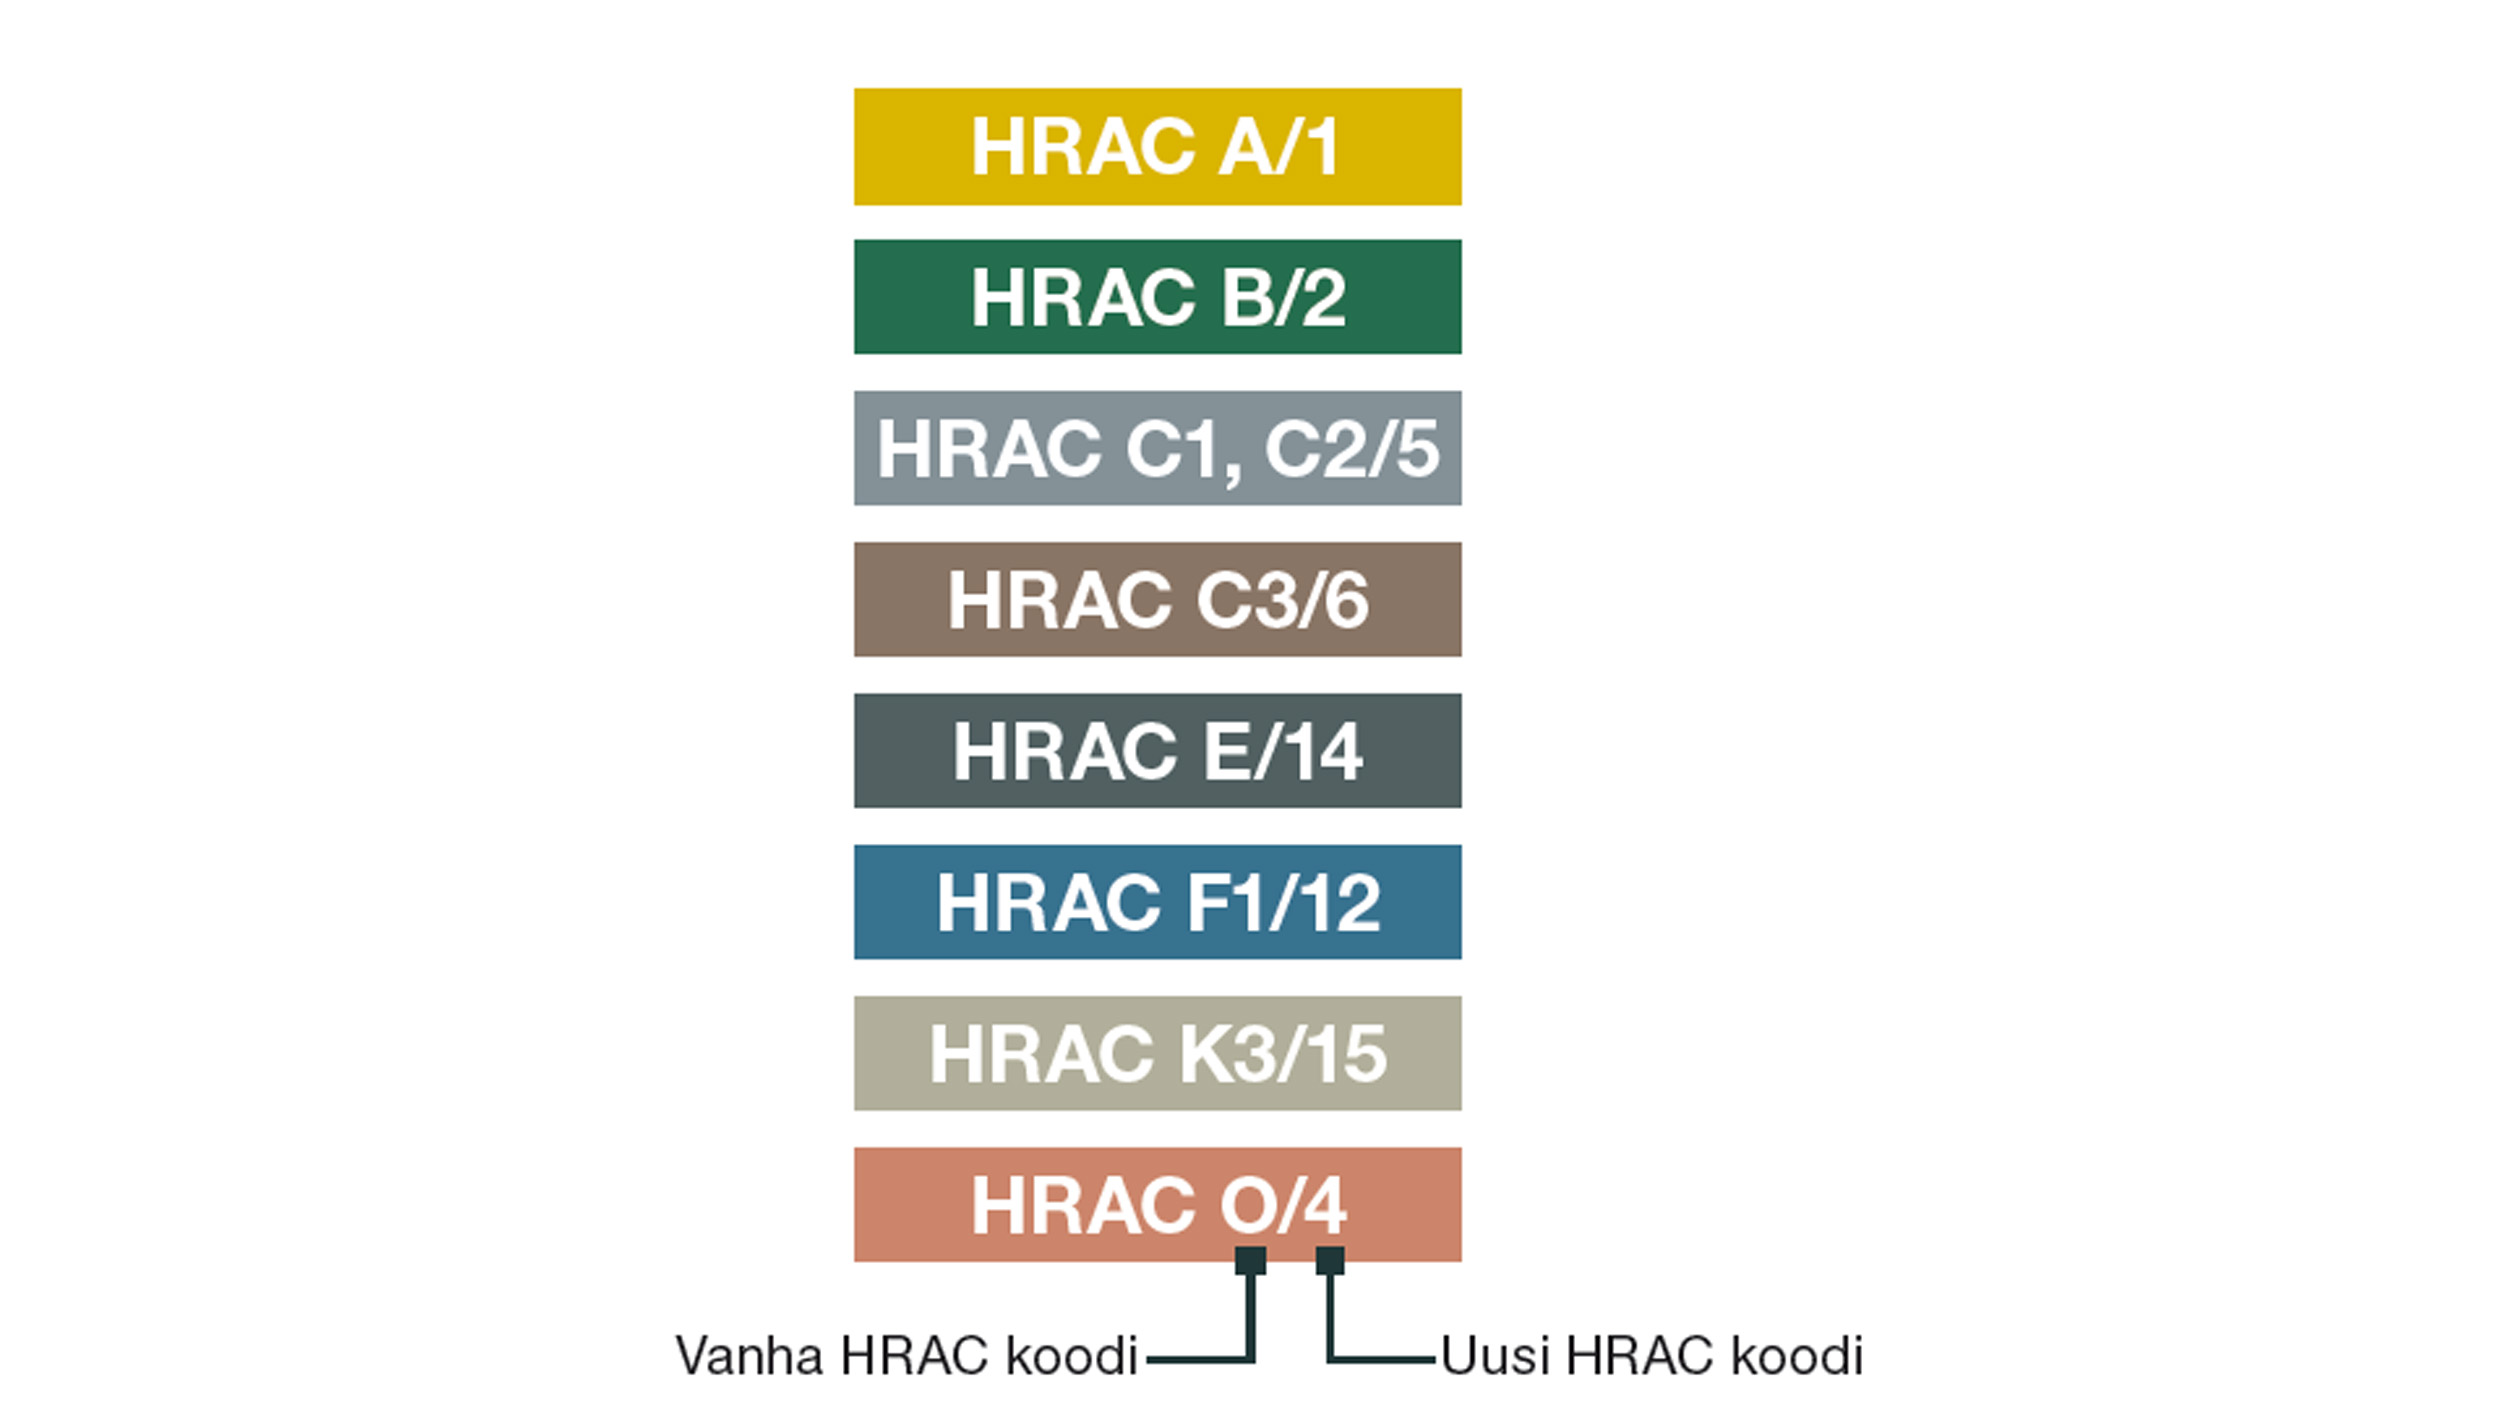 * HRAC koodit vaihtuivat kirjaimista numeroiksi 2020. Lisätietoja saa www.hracglobal.com.